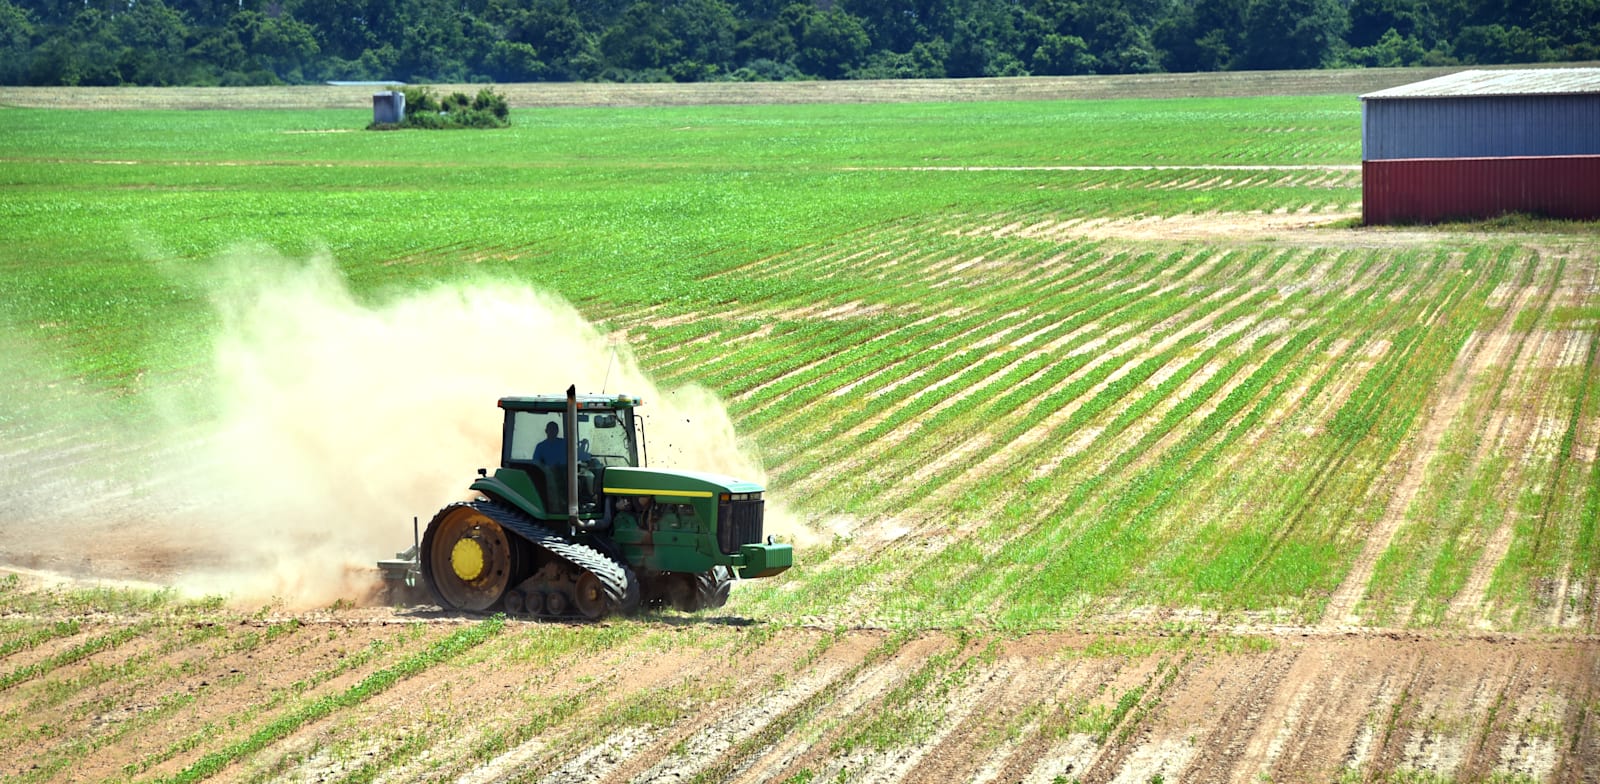 את העיוותים שקרטל החקלאים גורם, איש לא יוכל למזער / צילום: Shutterstock, Bonita R. Cheshier